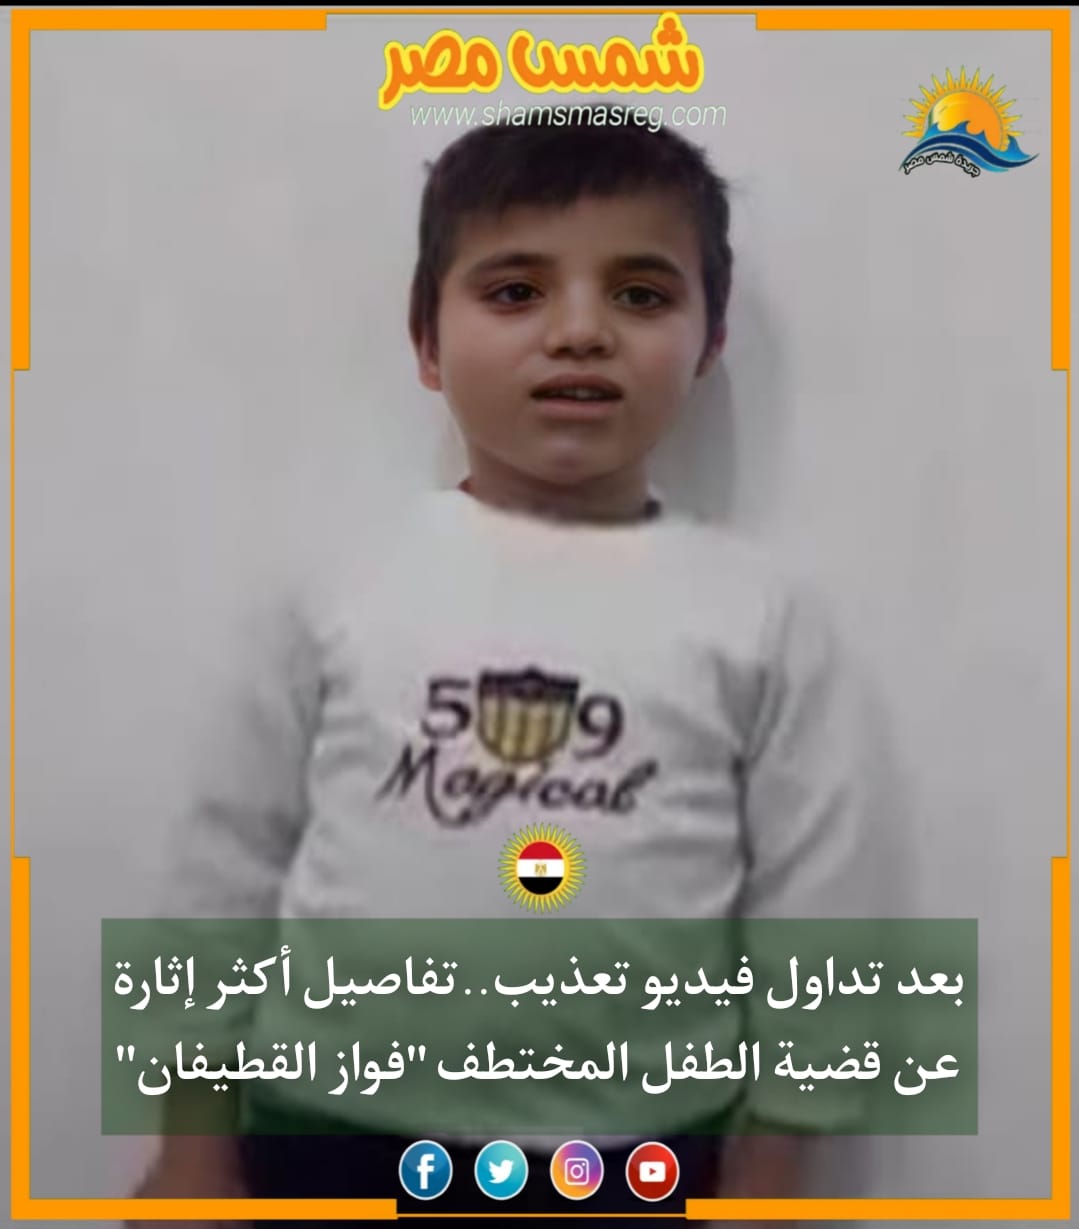 |شمس مصر|.. بعد تداول فيديو تعذيب.. تفاصيل أكثر إثارة عن قضية الطفل المختطف "فواز القطيفان"